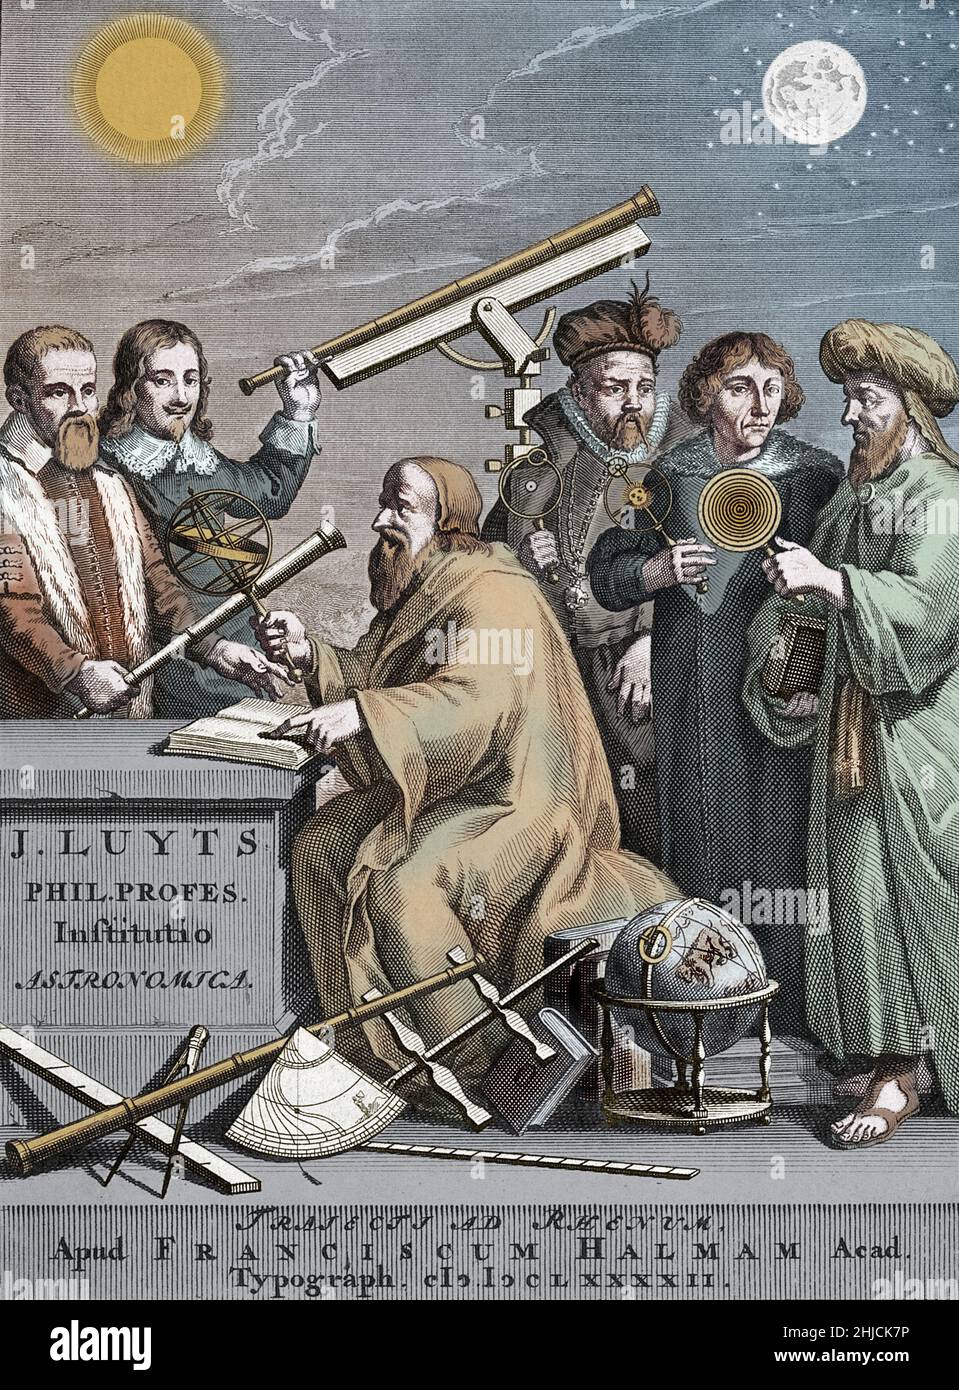 Famosi astronomi della storia, una colorazione di un'incisione di frontespizio di Jan Luyts‚Äôs Astronomica Institutio, 1692. La figura al centro può essere l'antico astronomo greco Hipparchus, o una figura di Luiti stesso. Sullo sfondo sono raffigurati, da sinistra a destra: Galileo Galilei (1564-1642), Johannes Hevelius (1611-1687), Tycho Brahe (1546-1601), Nicolaus Copernico (1473-1543) e Tolomeo (100-c.‚Äâ170). Incisione frontespizio di J. Mulder dopo G. Hoet, da Jan Luyts‚Äôs Astronomica Institutio, 1692. Foto Stock